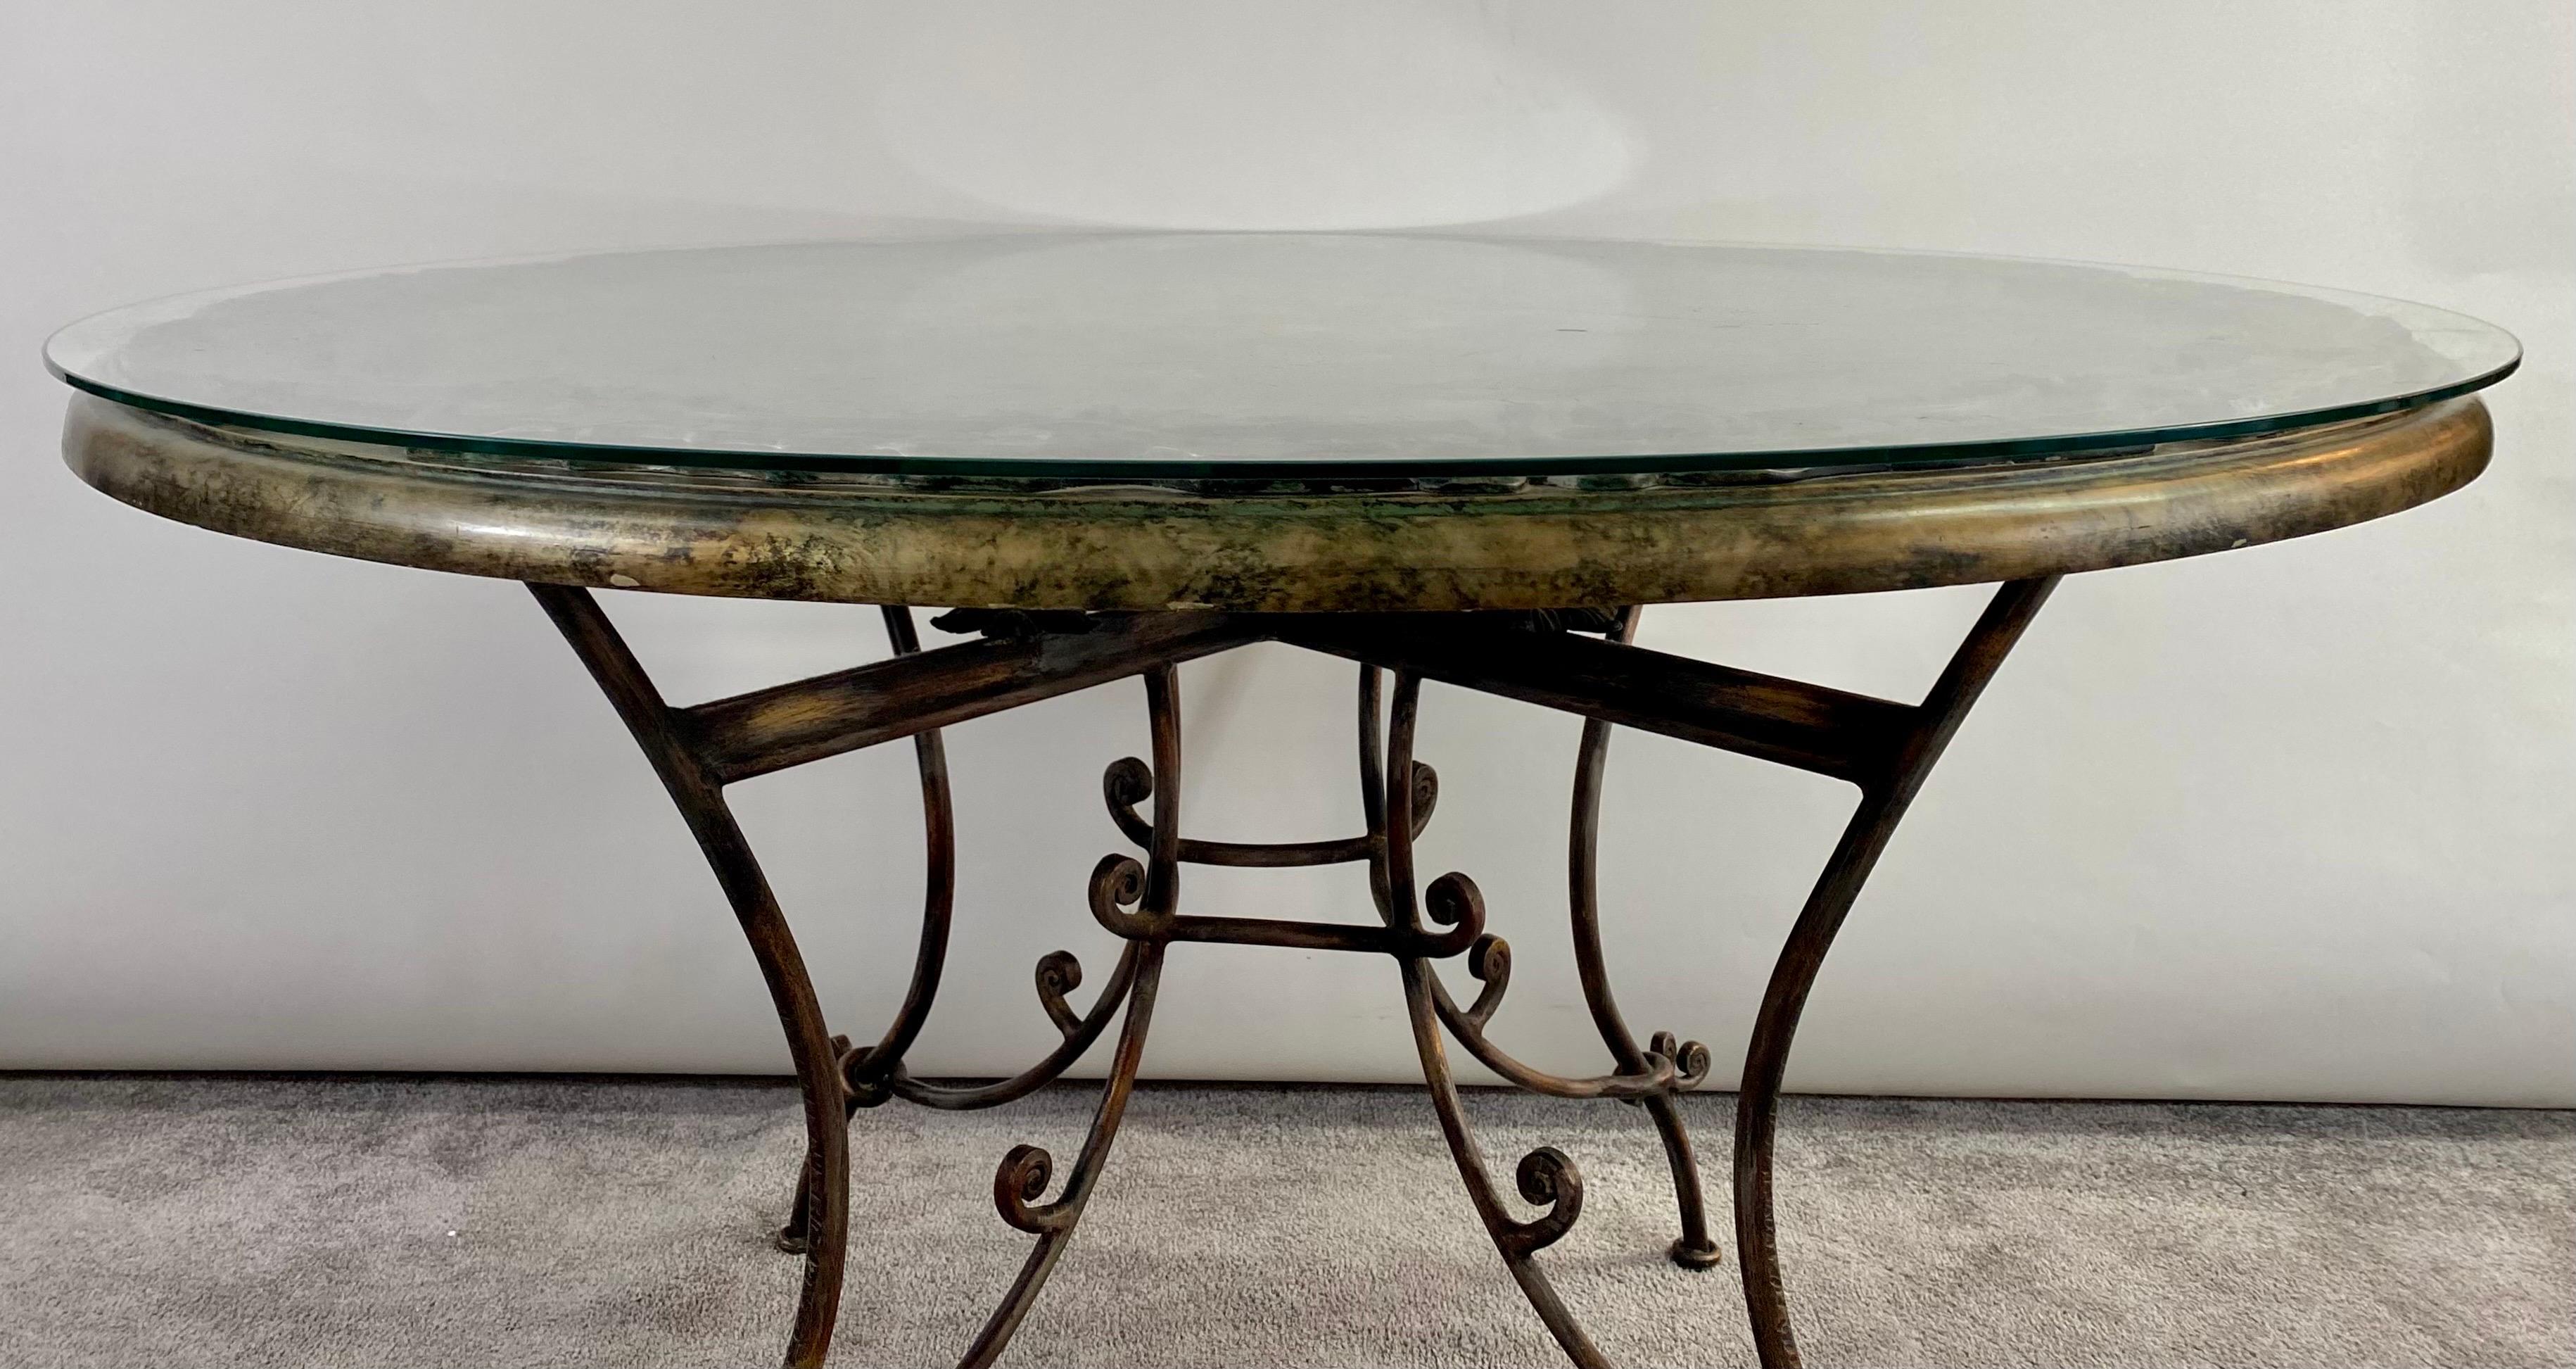 Une exquise table centrale ronde ou table à manger de style néoclassique français dans le style de René Drouet (français, 1899). Le magnifique plateau de table est peint à la main et présente des motifs floraux et un grand bouquet de fleurs sur une